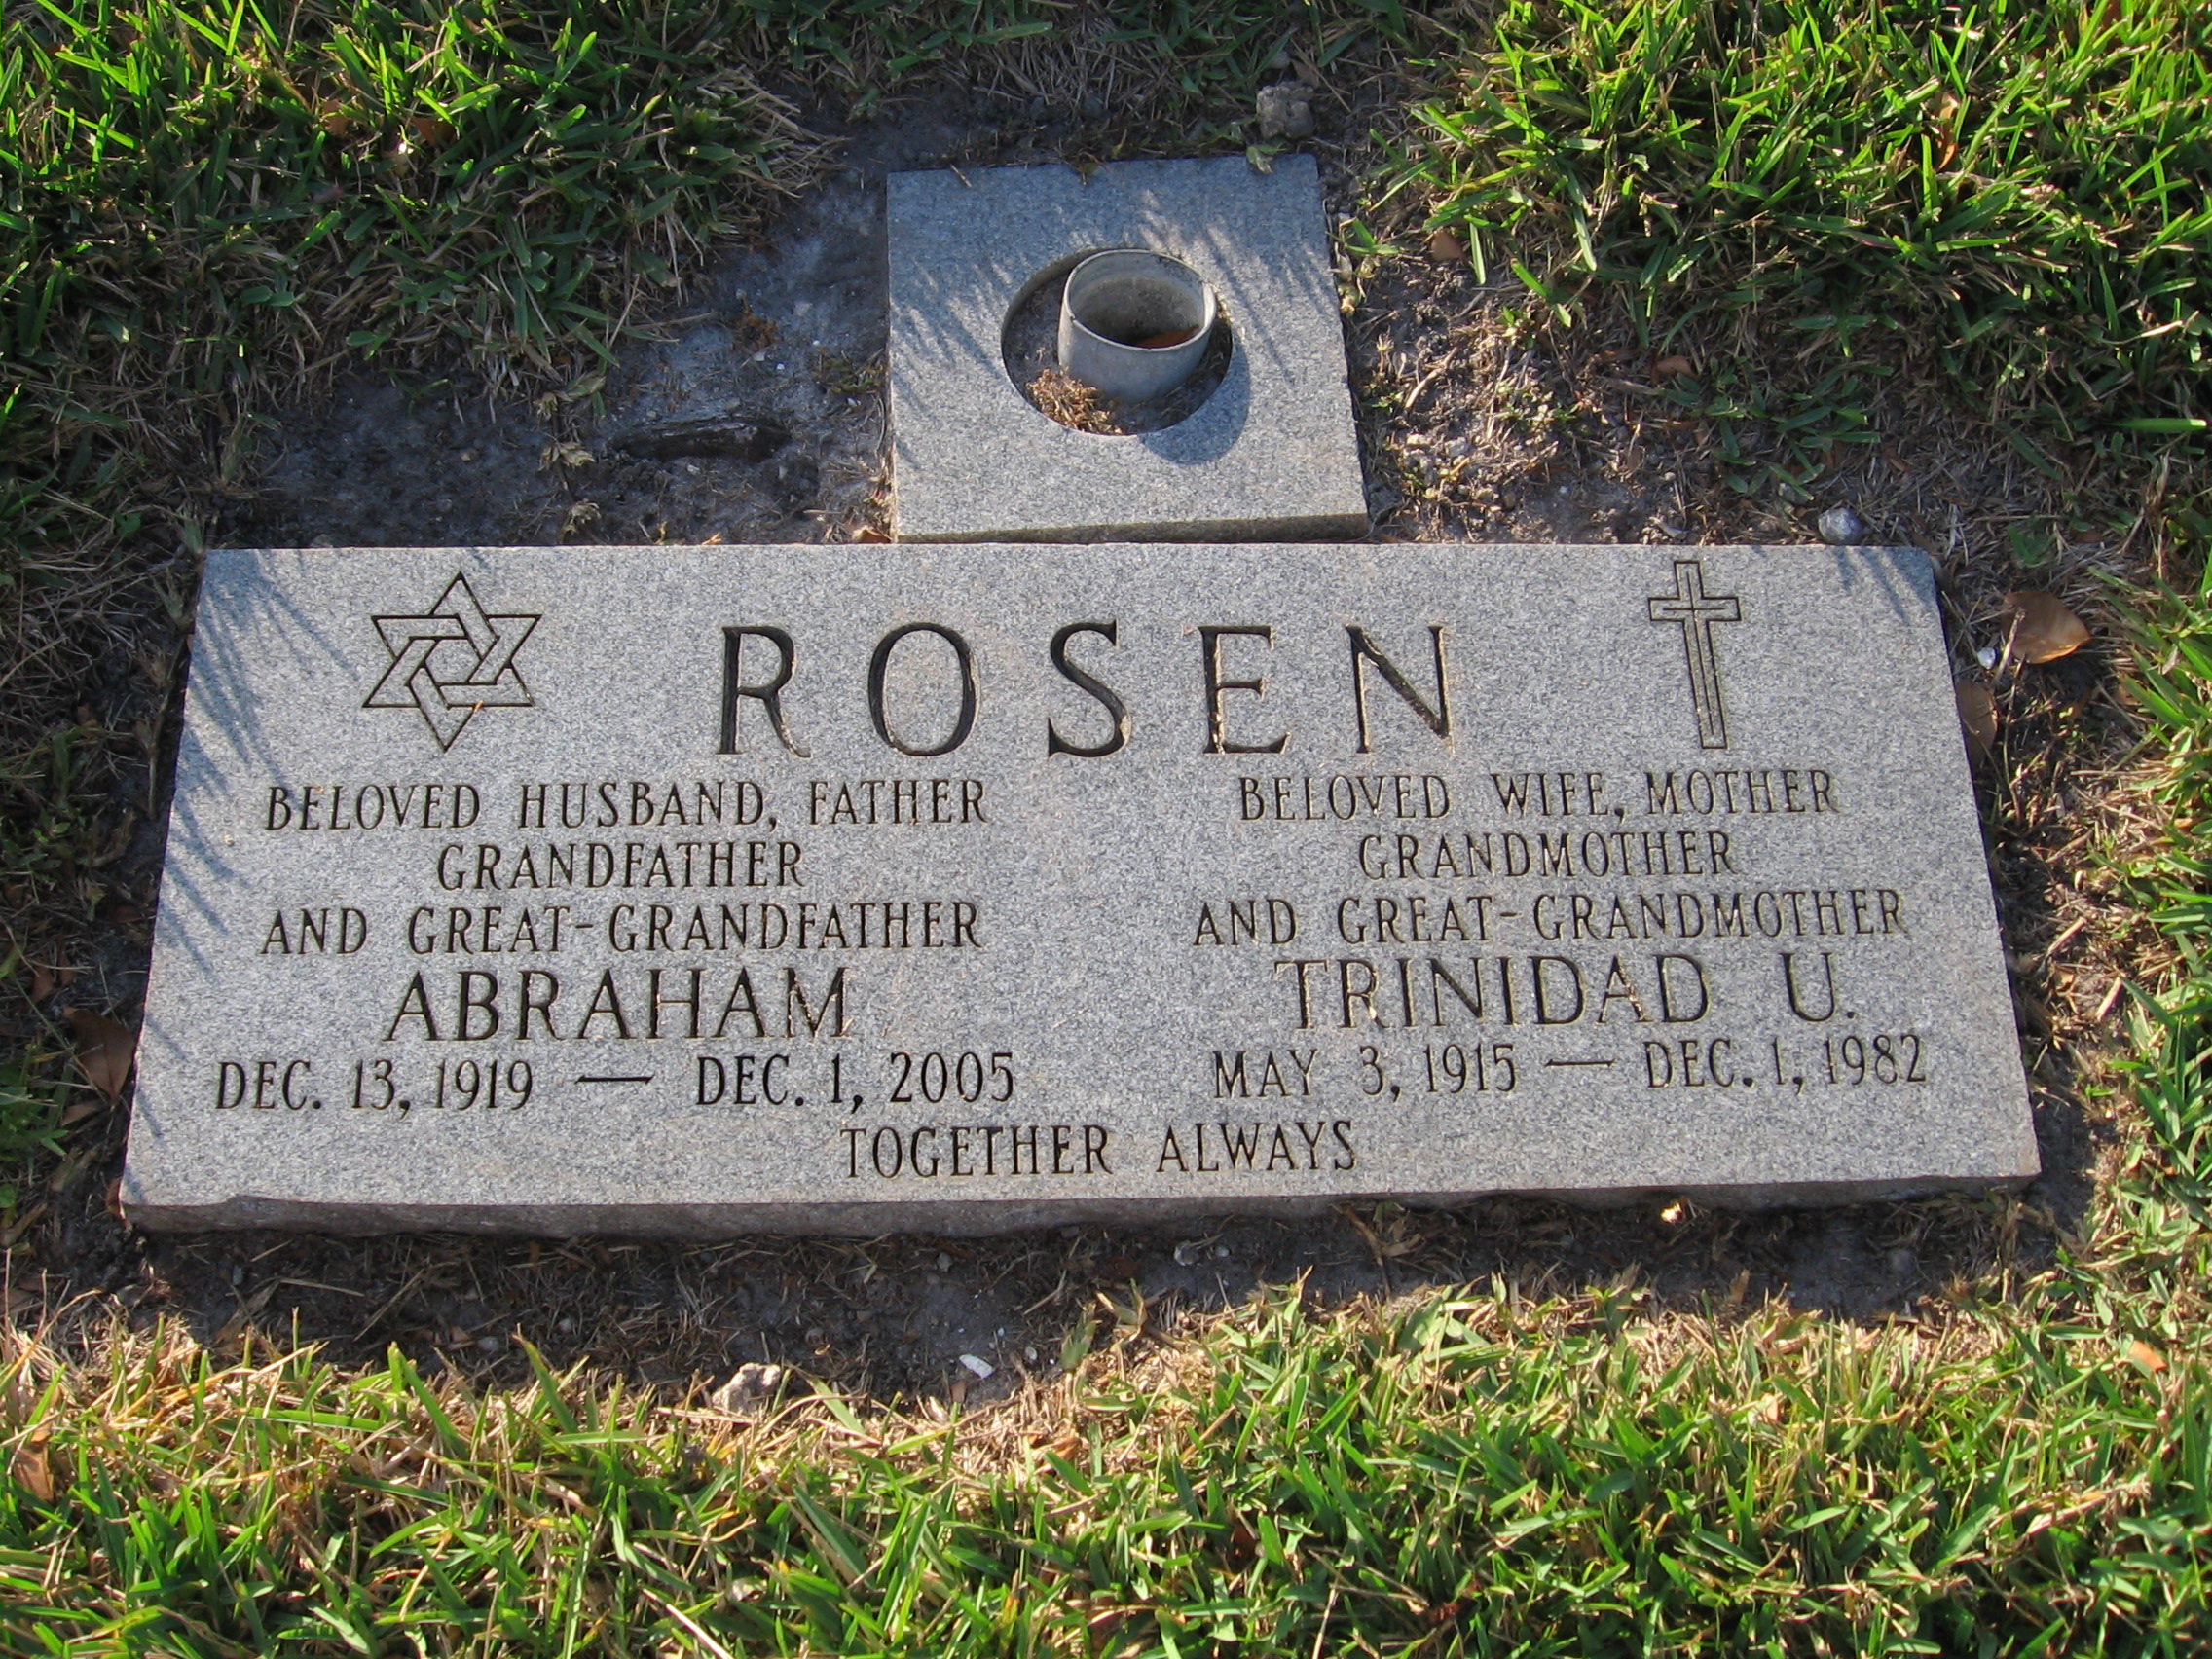 Trinidad U Rosen